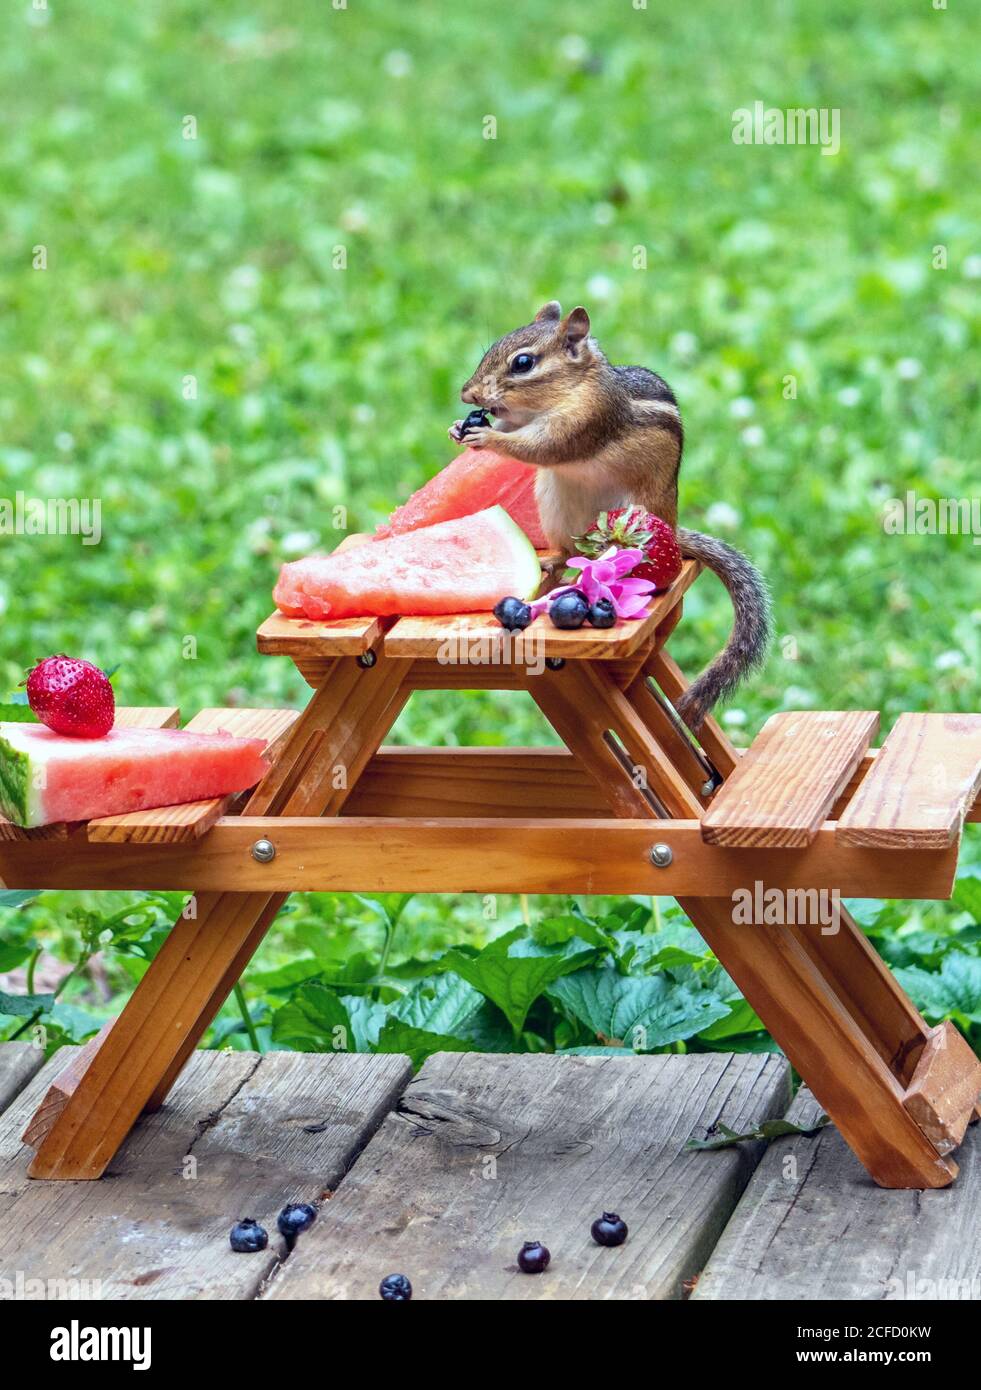 Le petit chipmunk aime les fruits de l'été lors de ce pique-nique miniature Banque D'Images